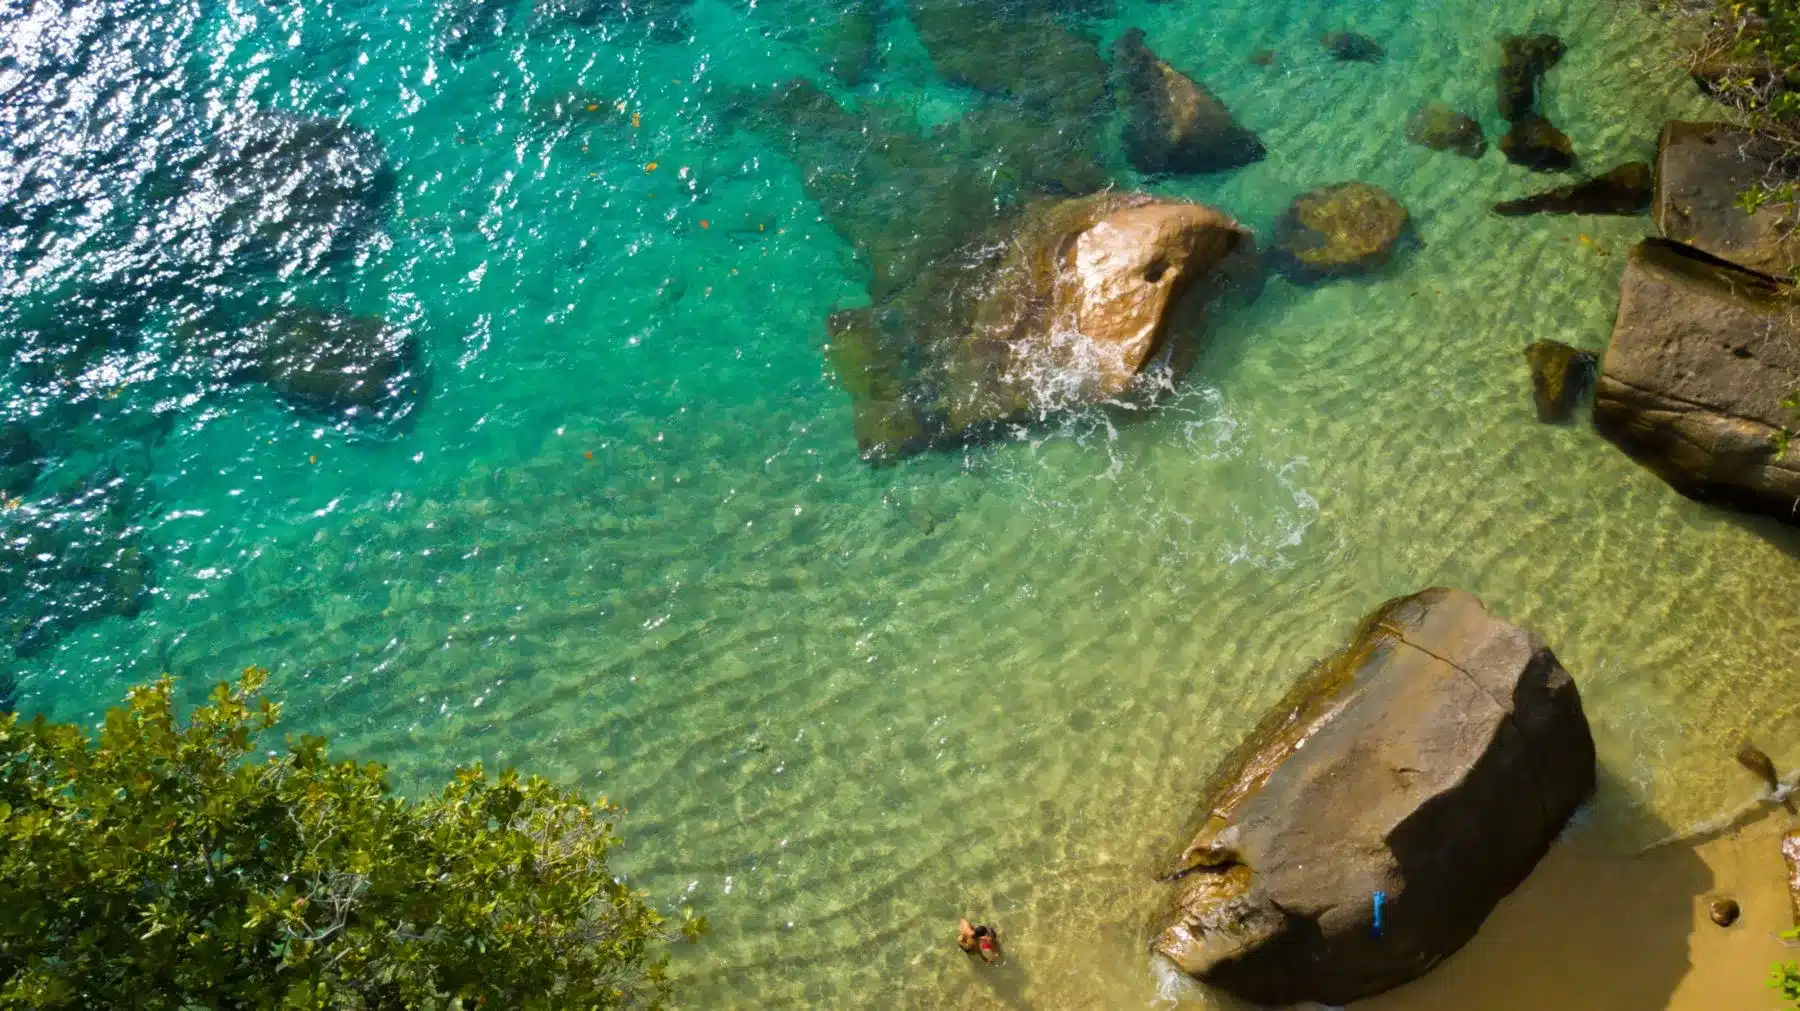 Luftaufnahme eines klaren türkisfarbenen Meeres mit großen Felsen in Ufernähe und ein paar Menschen, die während ihres Segelurlaubs um sie herum schwimmen und schnorcheln. Grünes Laub umrahmt teilweise den oberen Rand des